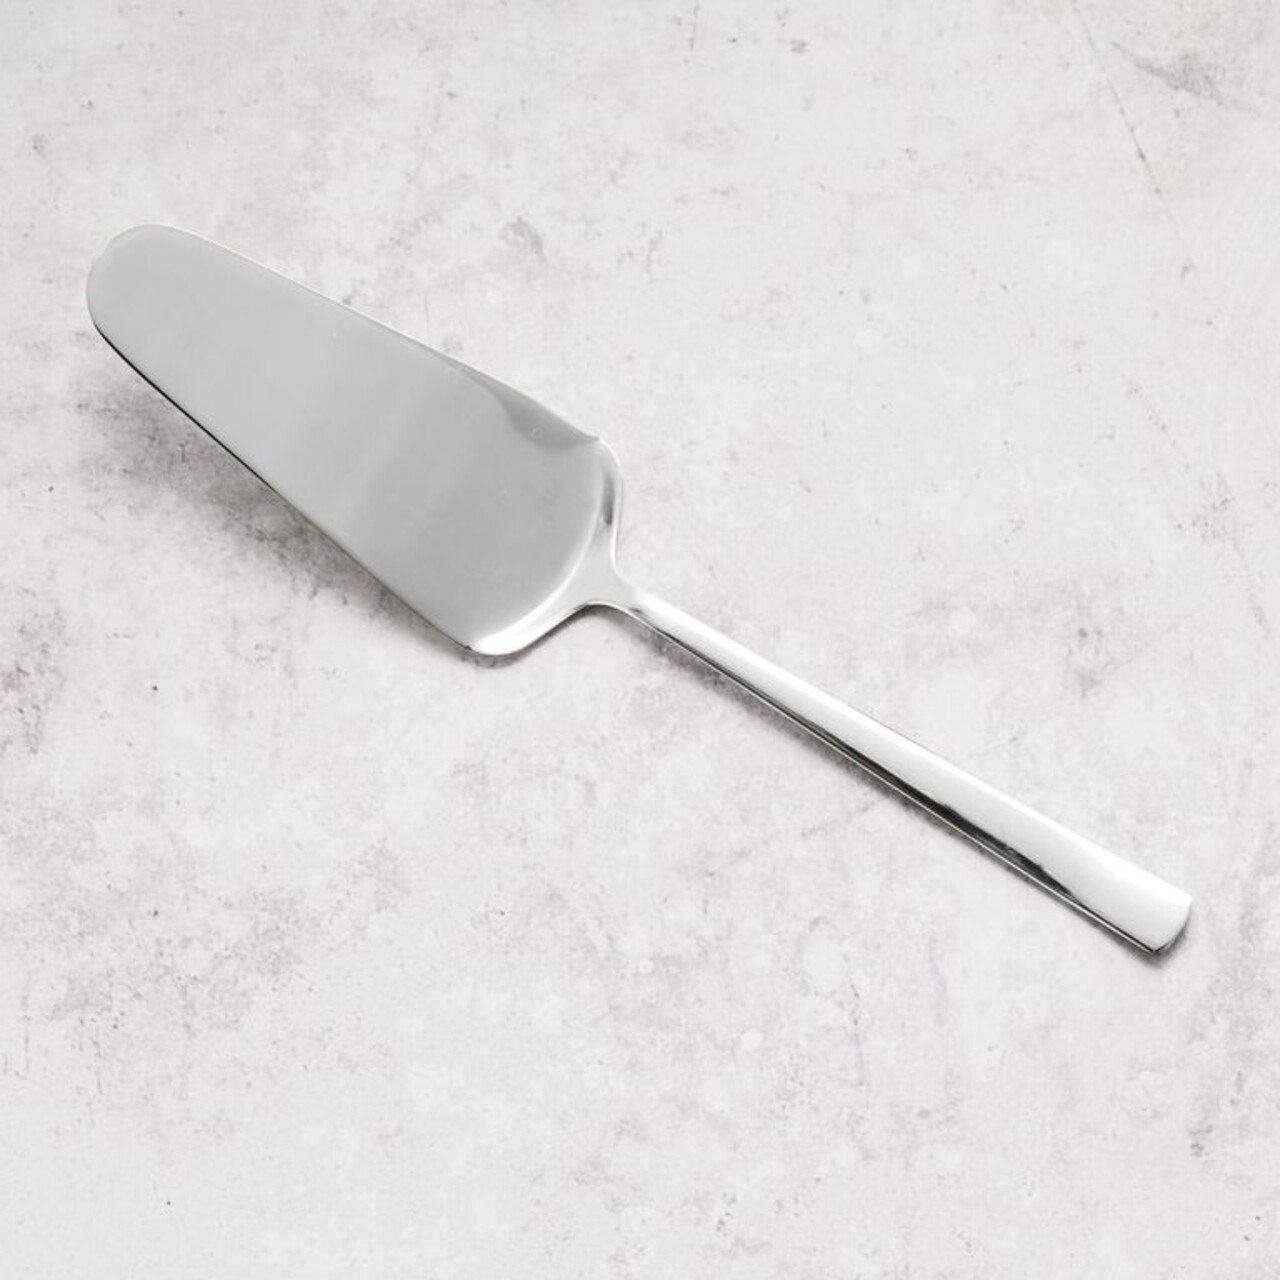 Prato Sütemény szervírozó spatula, Ambition, 25.5 cm, rozsdamentes acél